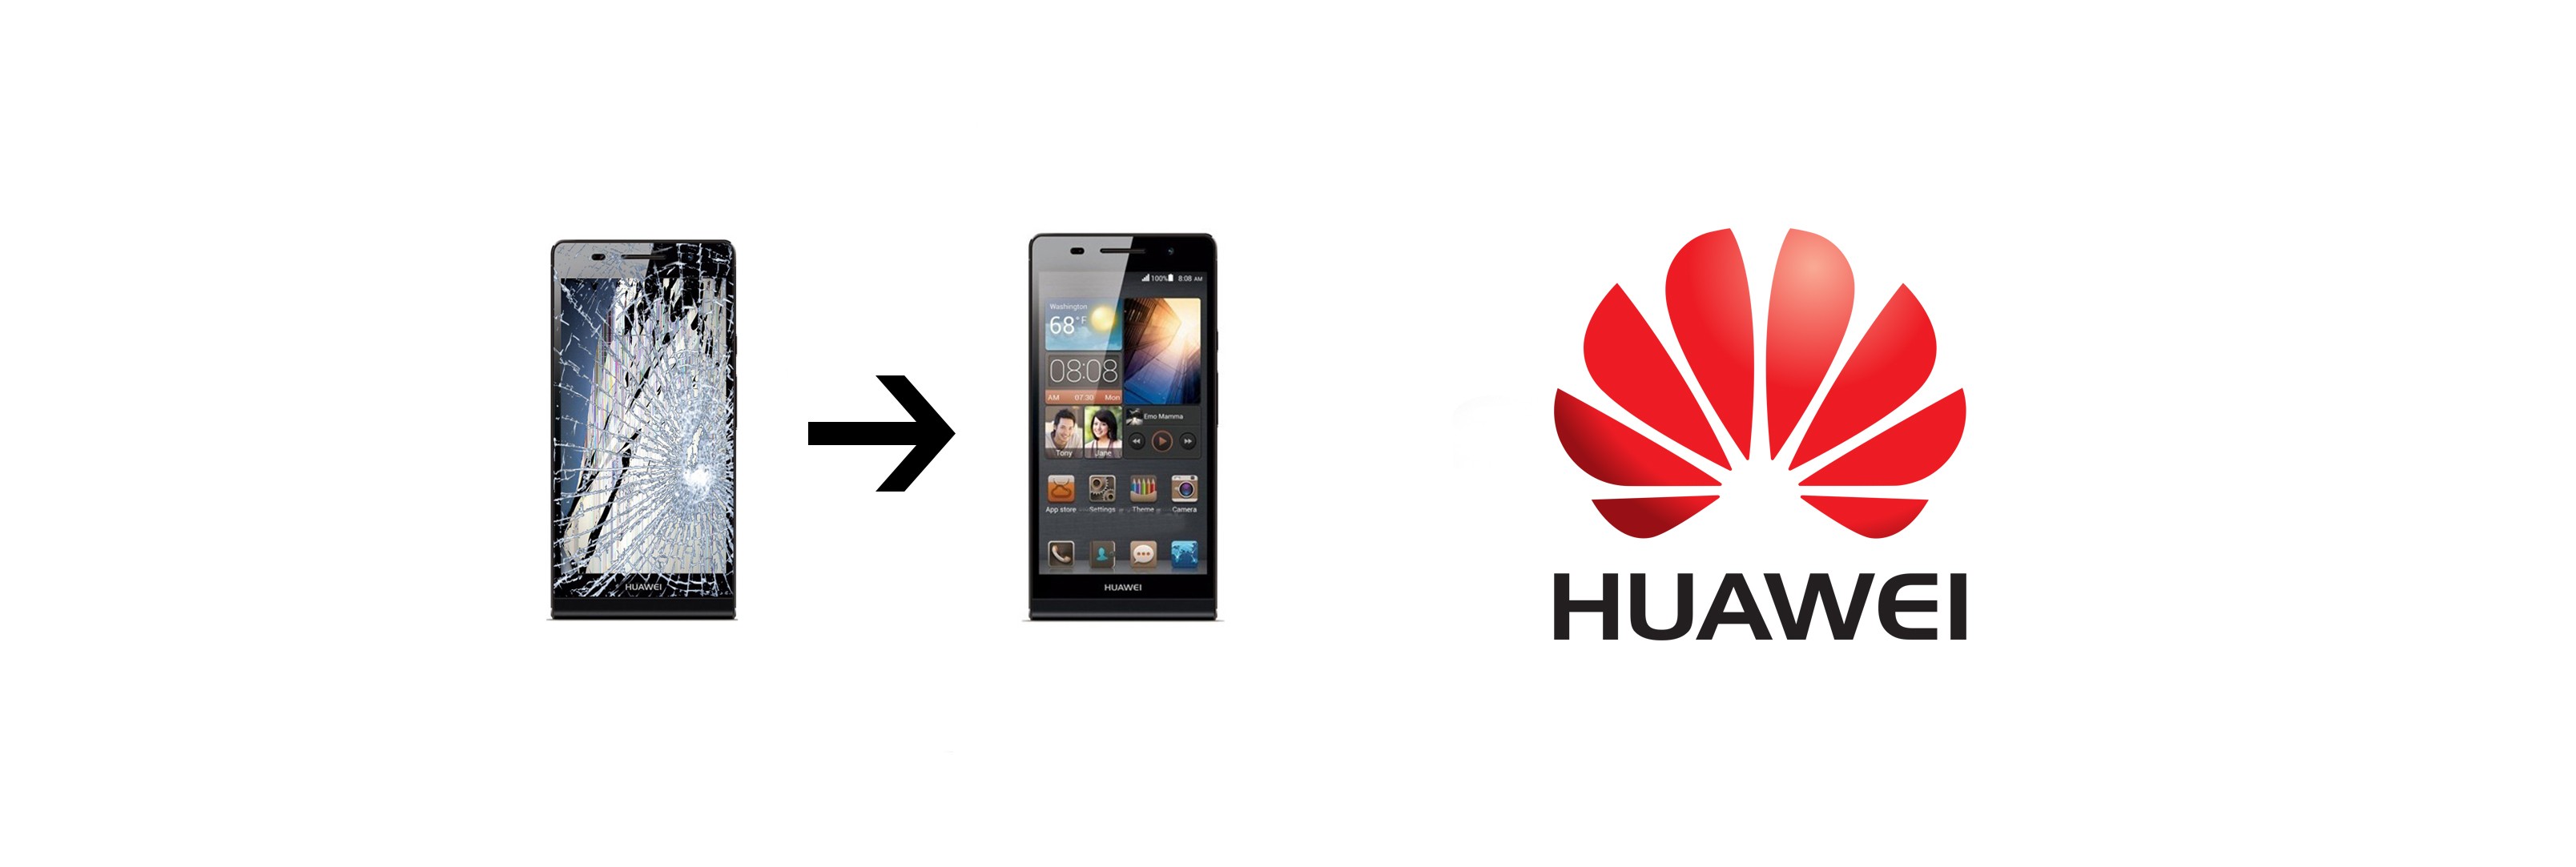 LCD Screen Repair Service For Huawei